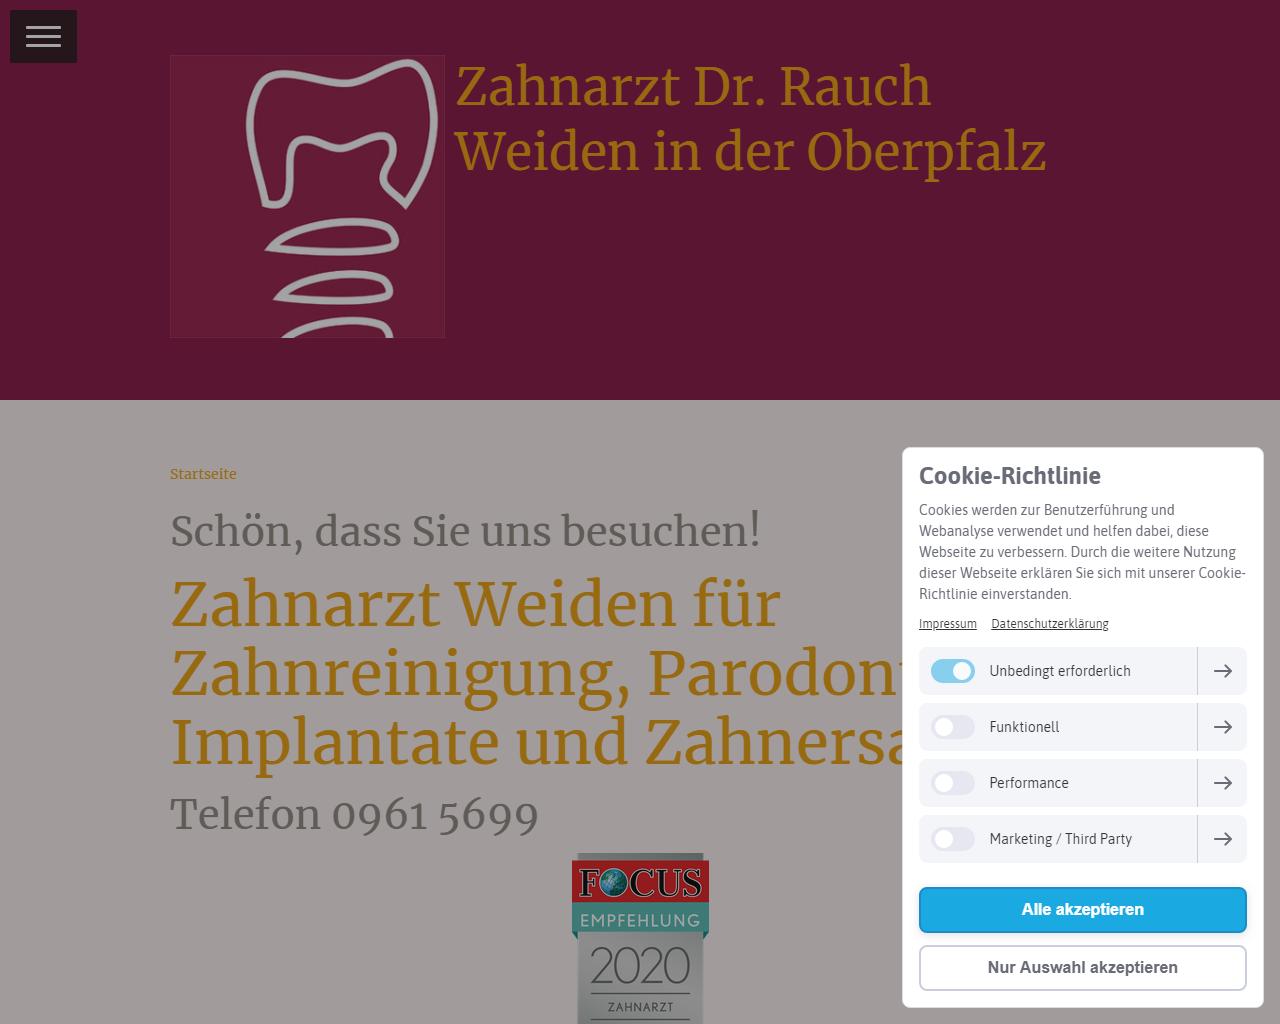 Herr Dr. Johann Rauch